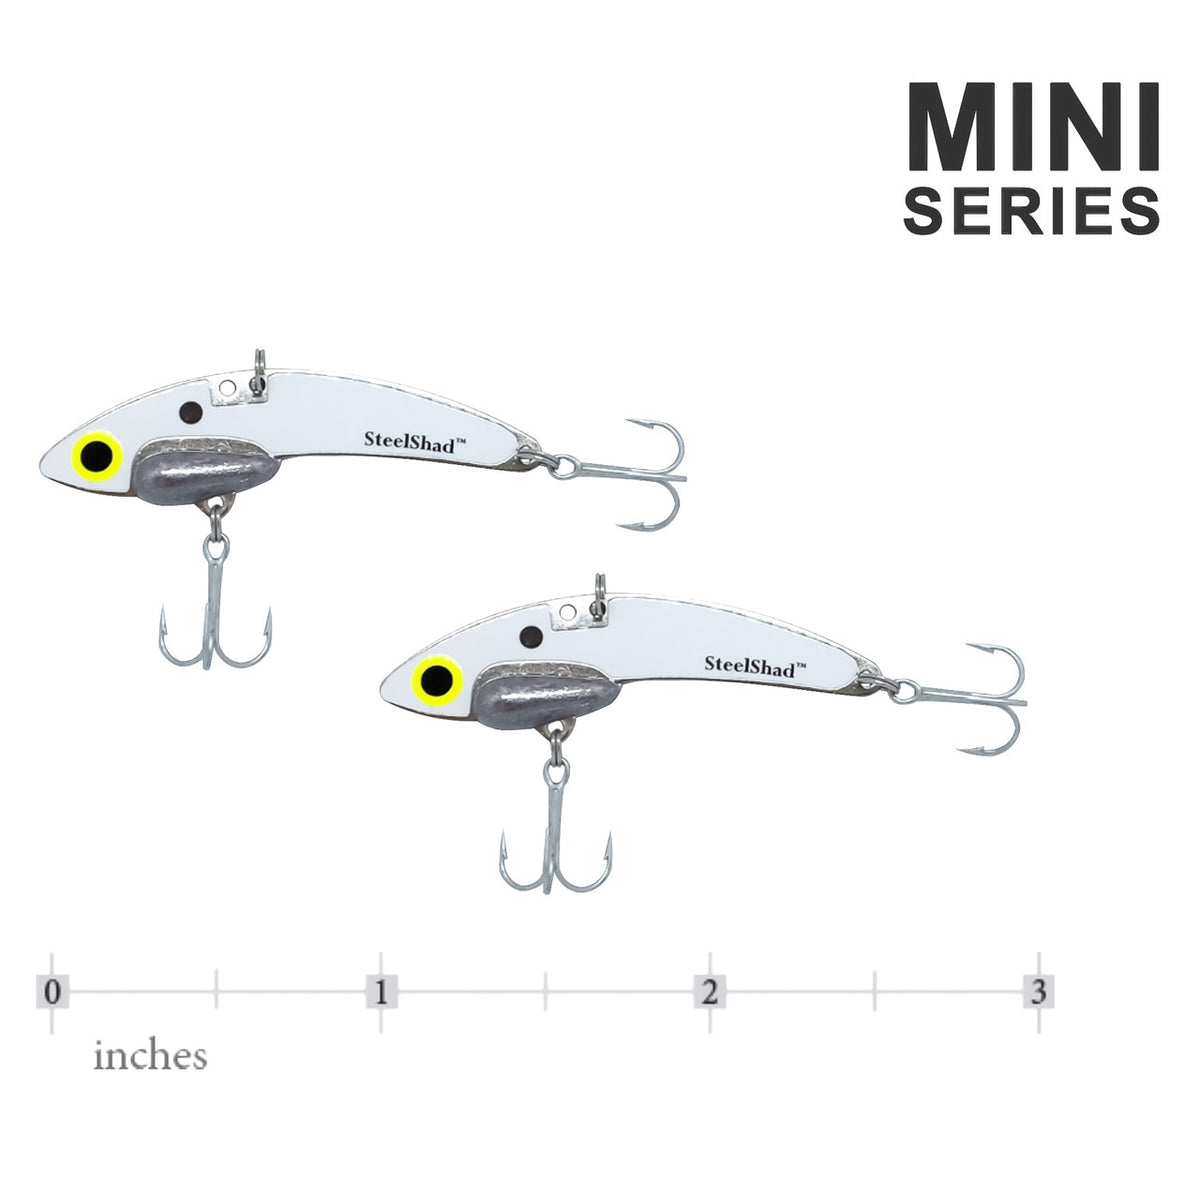 SteelShad Mini Series